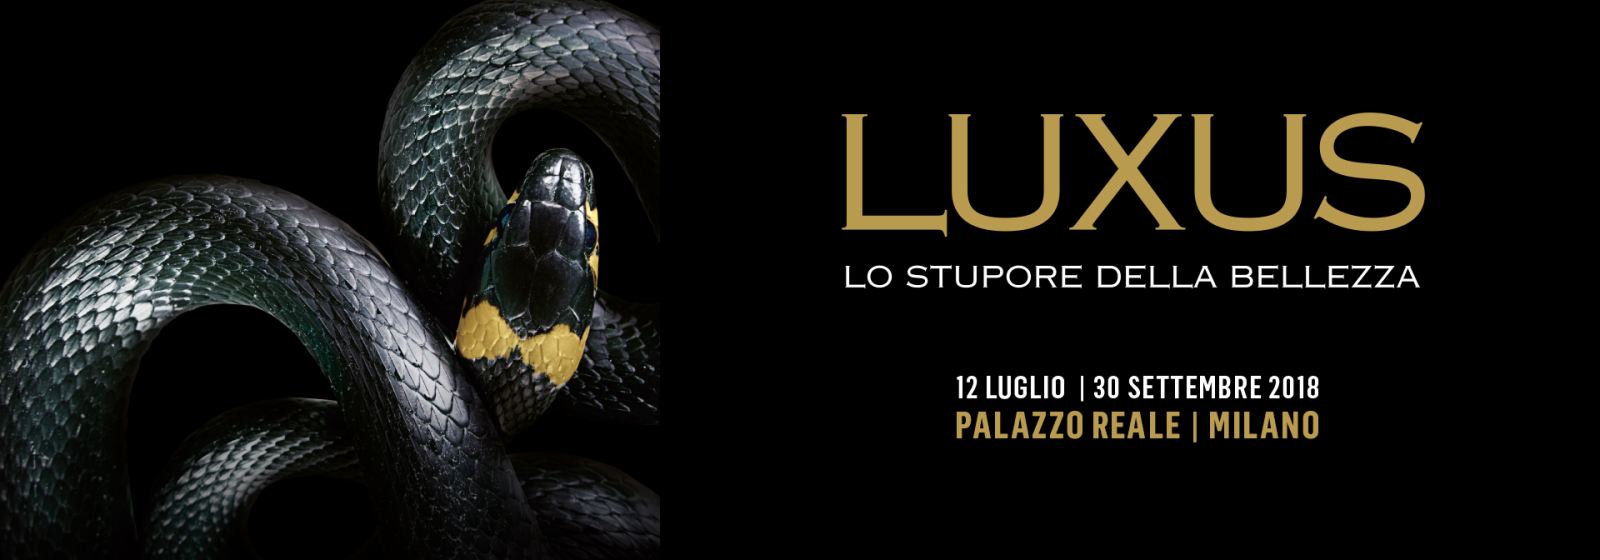 Luxus, lo stupore della bellezza: a Milano il lusso è protagonista